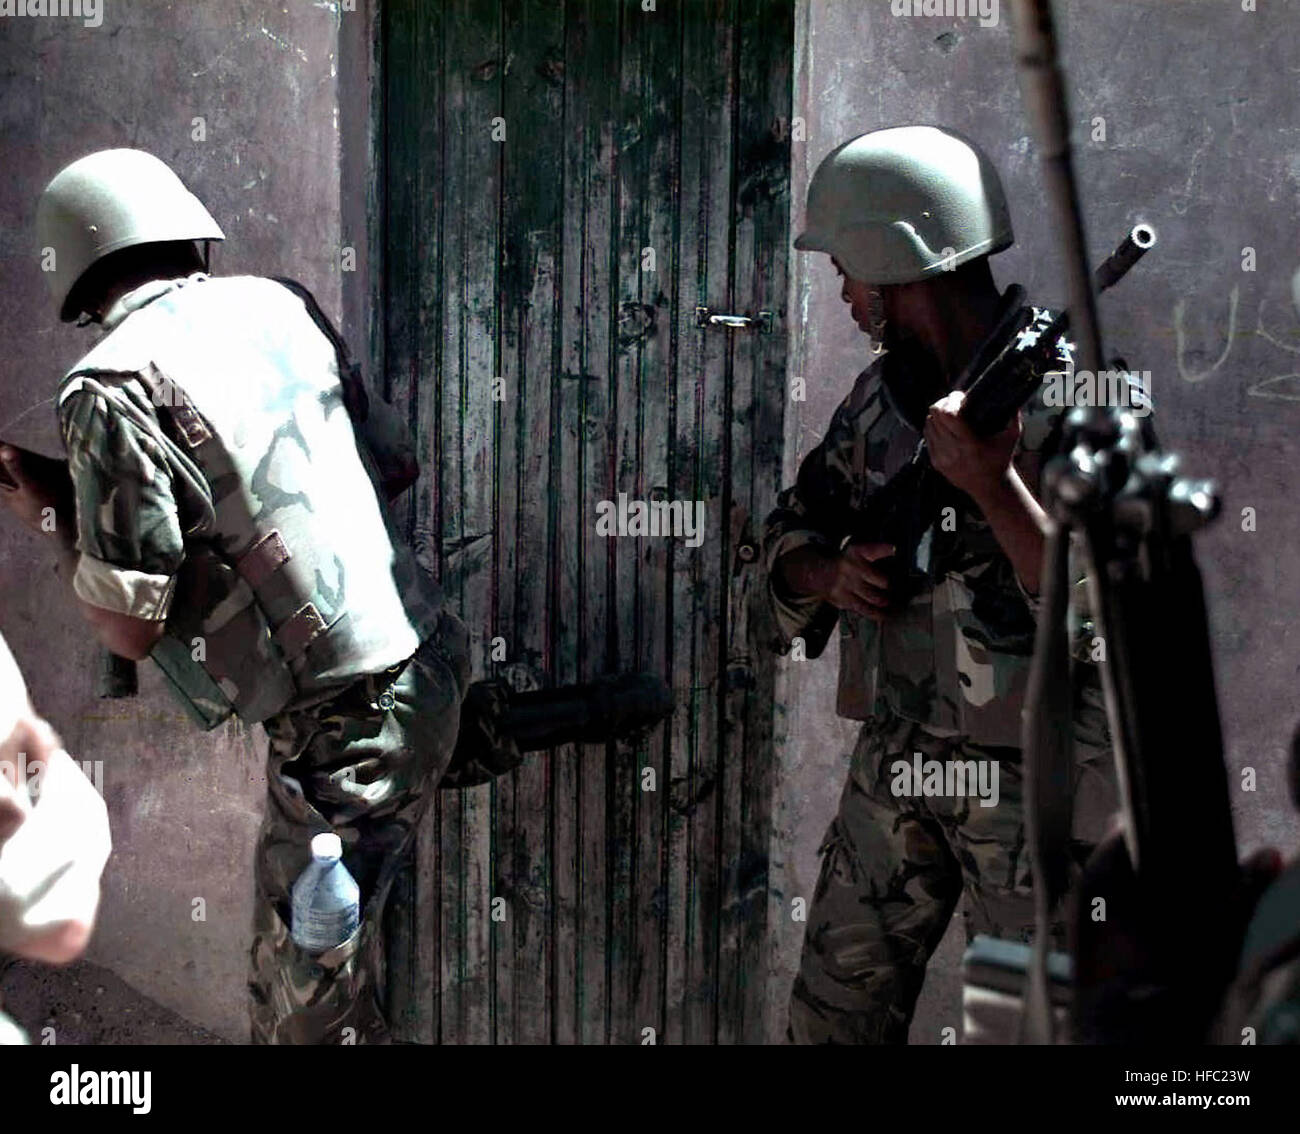 Deux membres de Forces de défense du Botswana se tenir près d'une porte d'un bâtiment. Le soldat à gauche donne un coup à la porte avec sa jambe droite. La porte fait partie d'un bâtiment dans le marché de Bakara à Mogadiscio, en Somalie. Les soldats sont à la recherche d'armes pendant un raid sur le marché avec des Marines (non illustré). Cette mission est en appui direct à l'Opération Restore Hope. 2 soldats BDF sur raid in Bakaara Market 1993-01-30 Banque D'Images